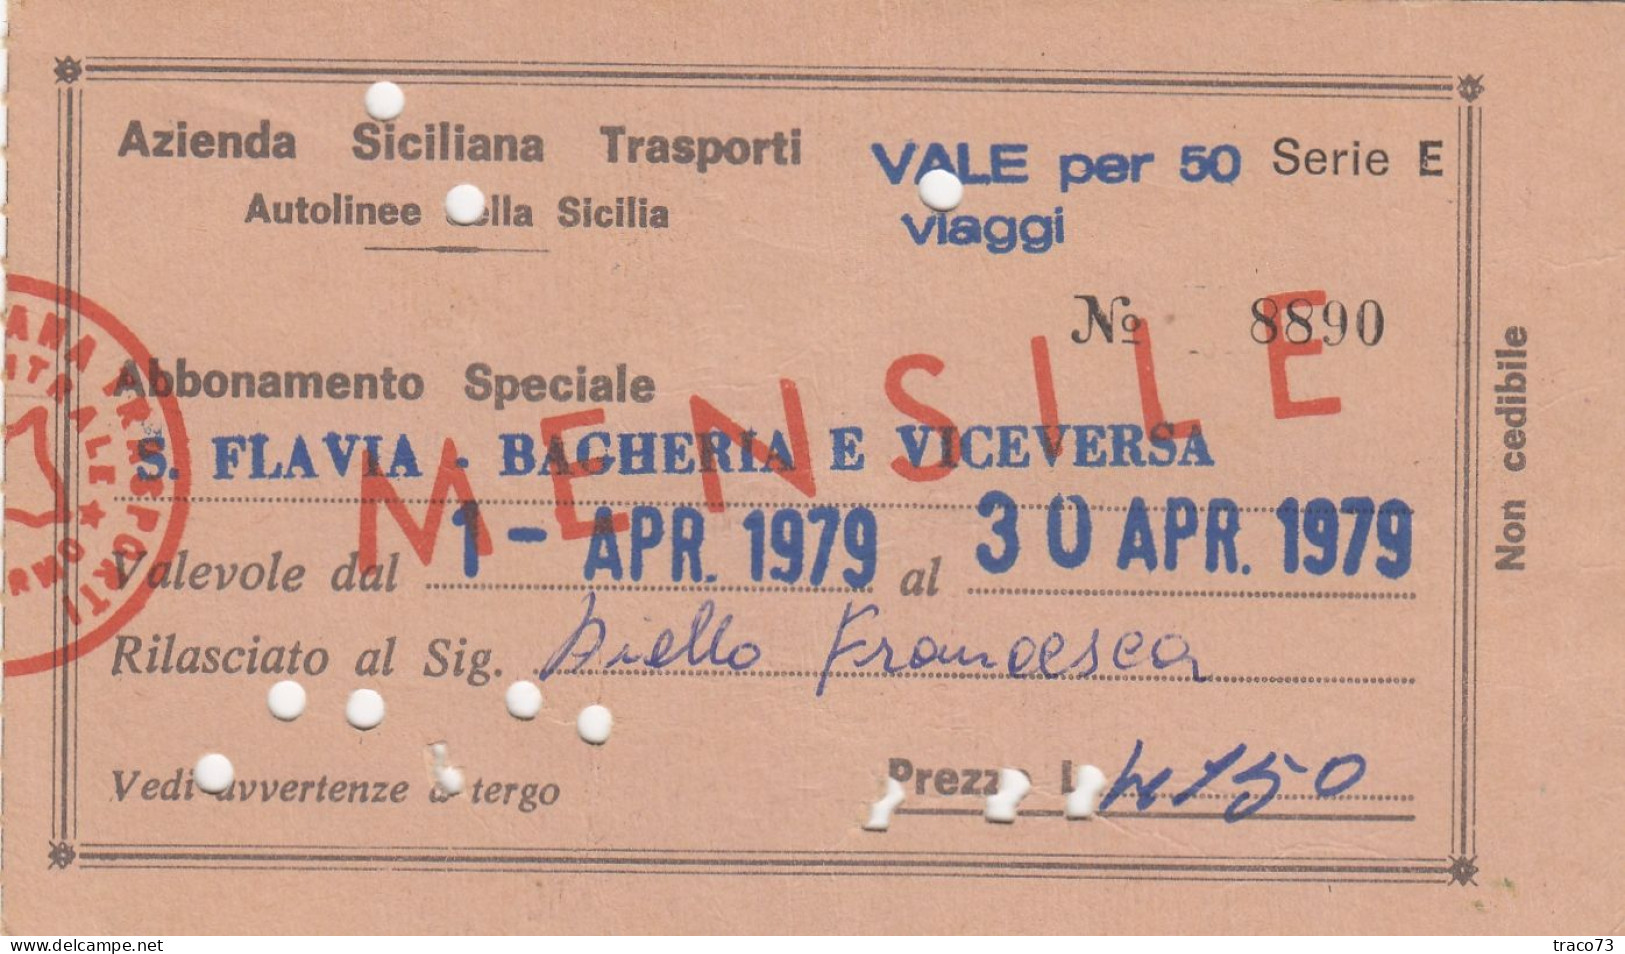 AZIENDA SICILIANA TRASPORTI / Autolinee Della Sicilia - Abbonamento Speciale _S. Flavia-Bagheria E Viceversa _ Apr. 1979 - Europe